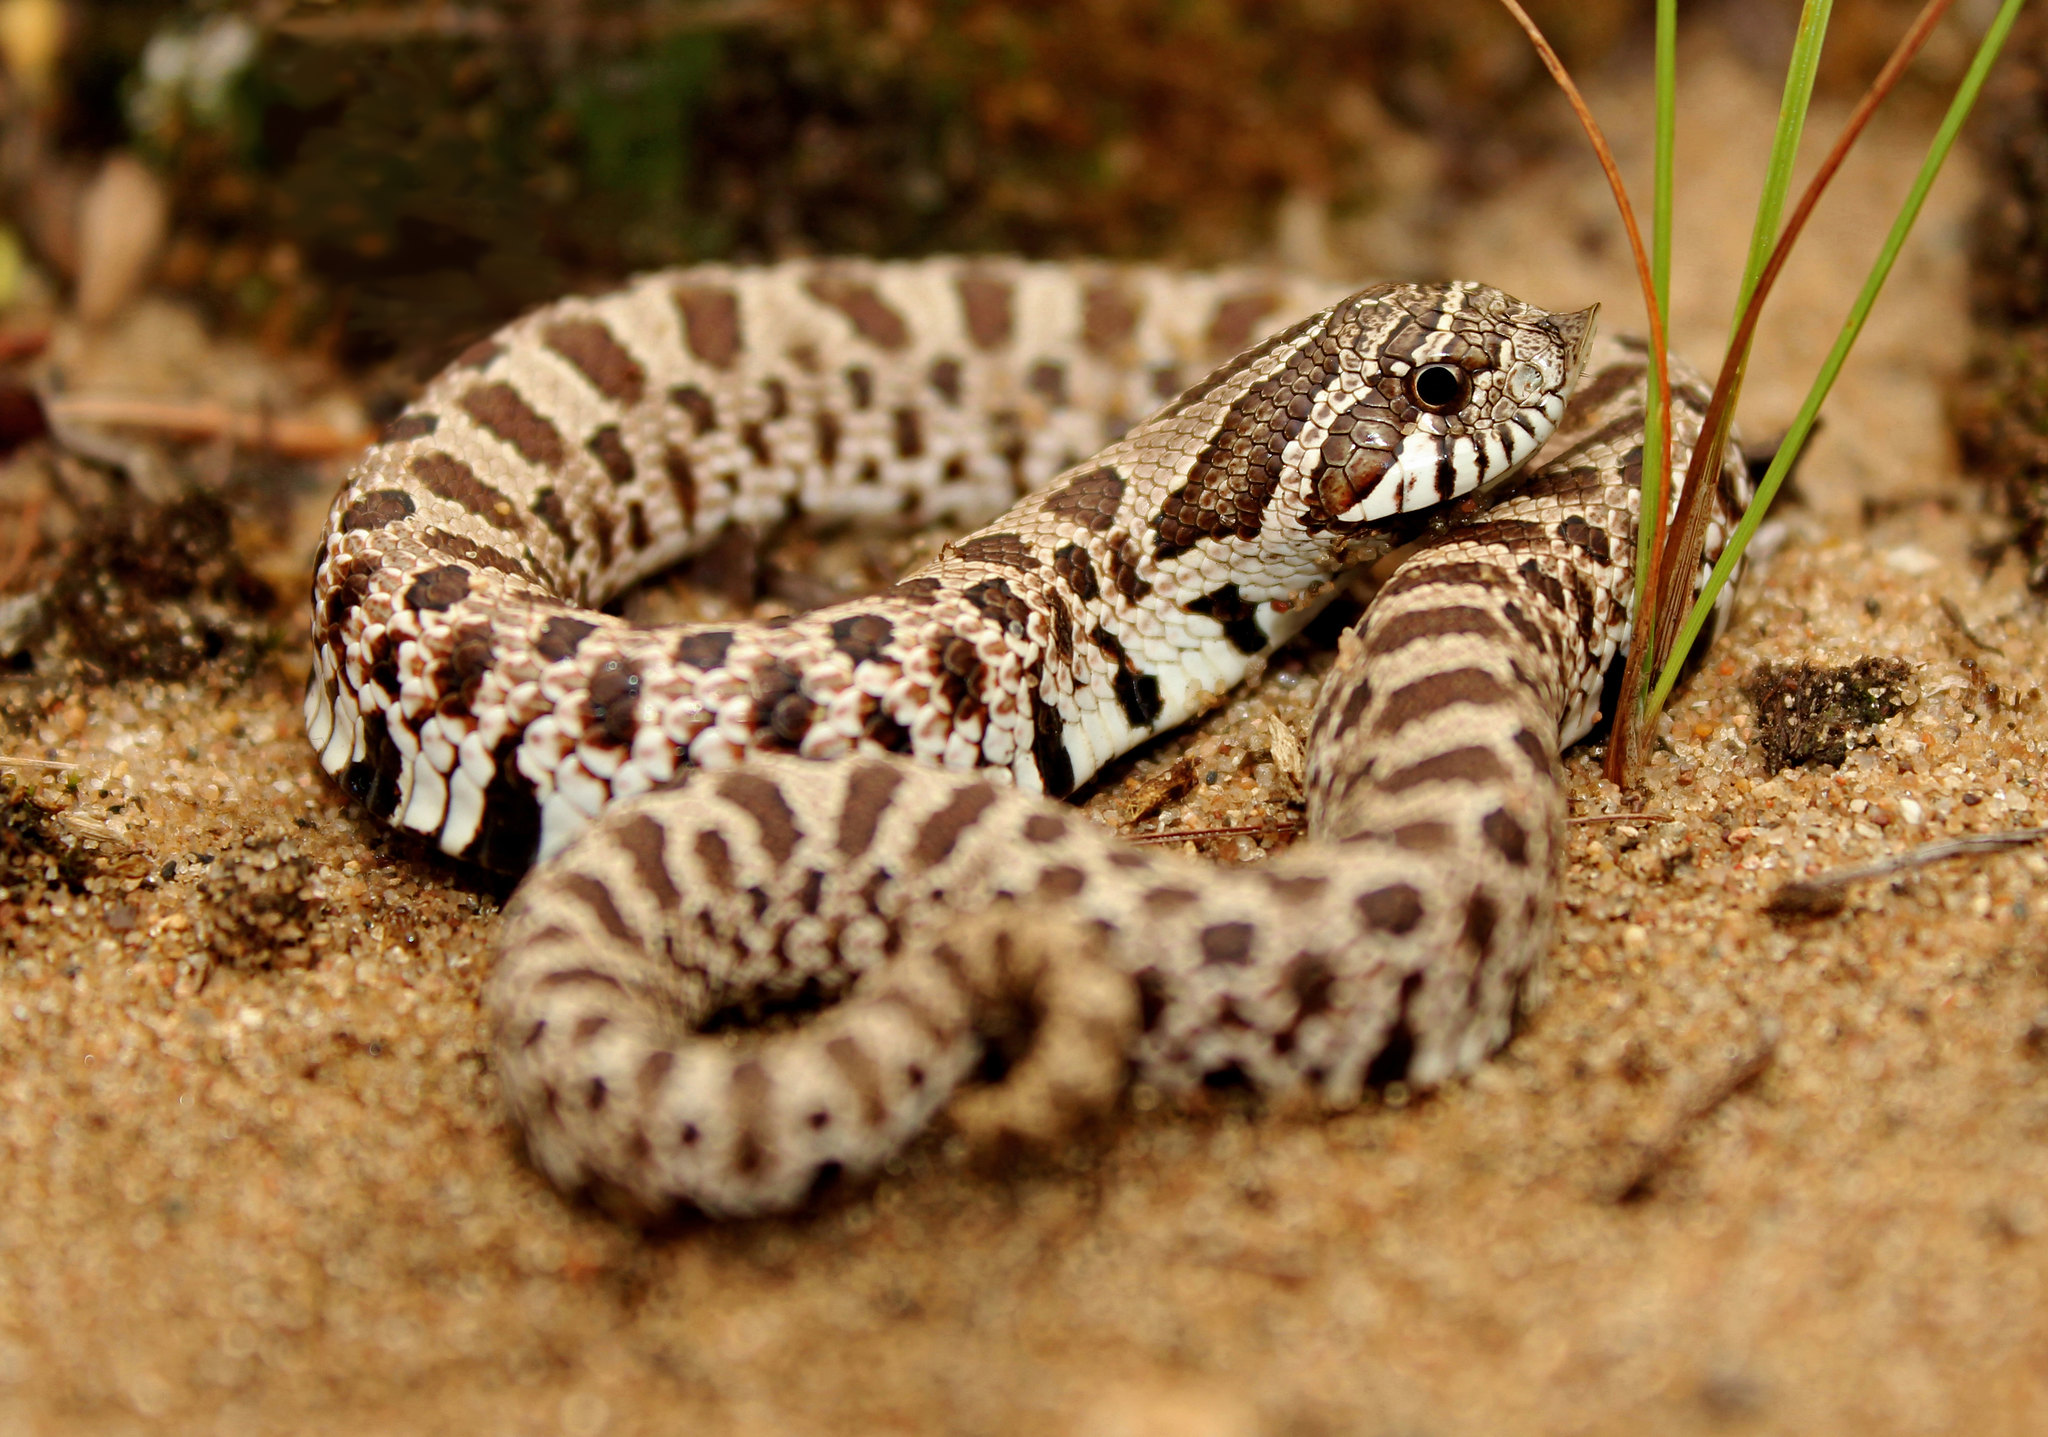 小型の蛇 セイブシシバナヘビとは 魅力 飼育方法 モルフを解説です